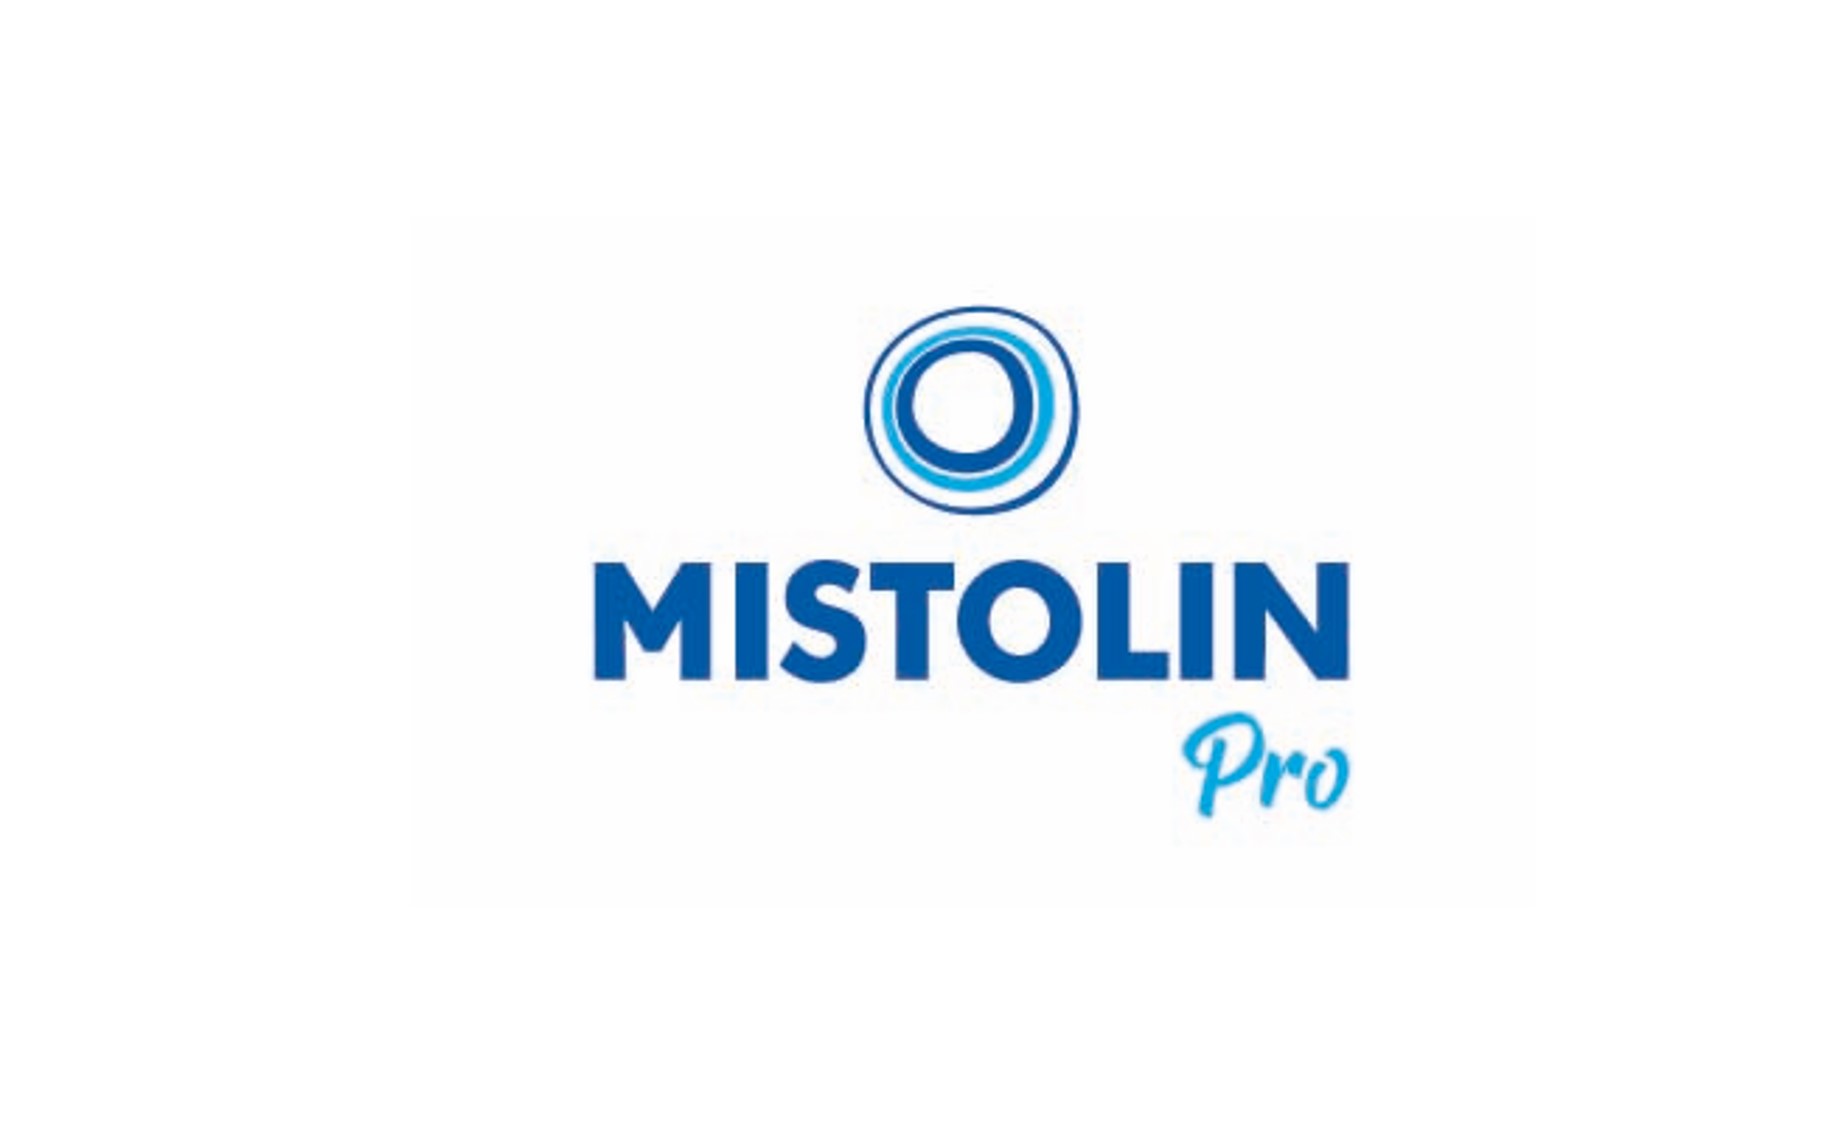 Mistolin Pro